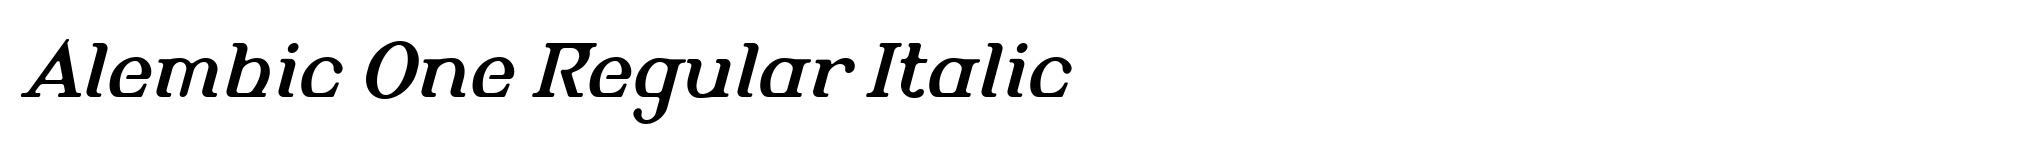 Alembic One Regular Italic image